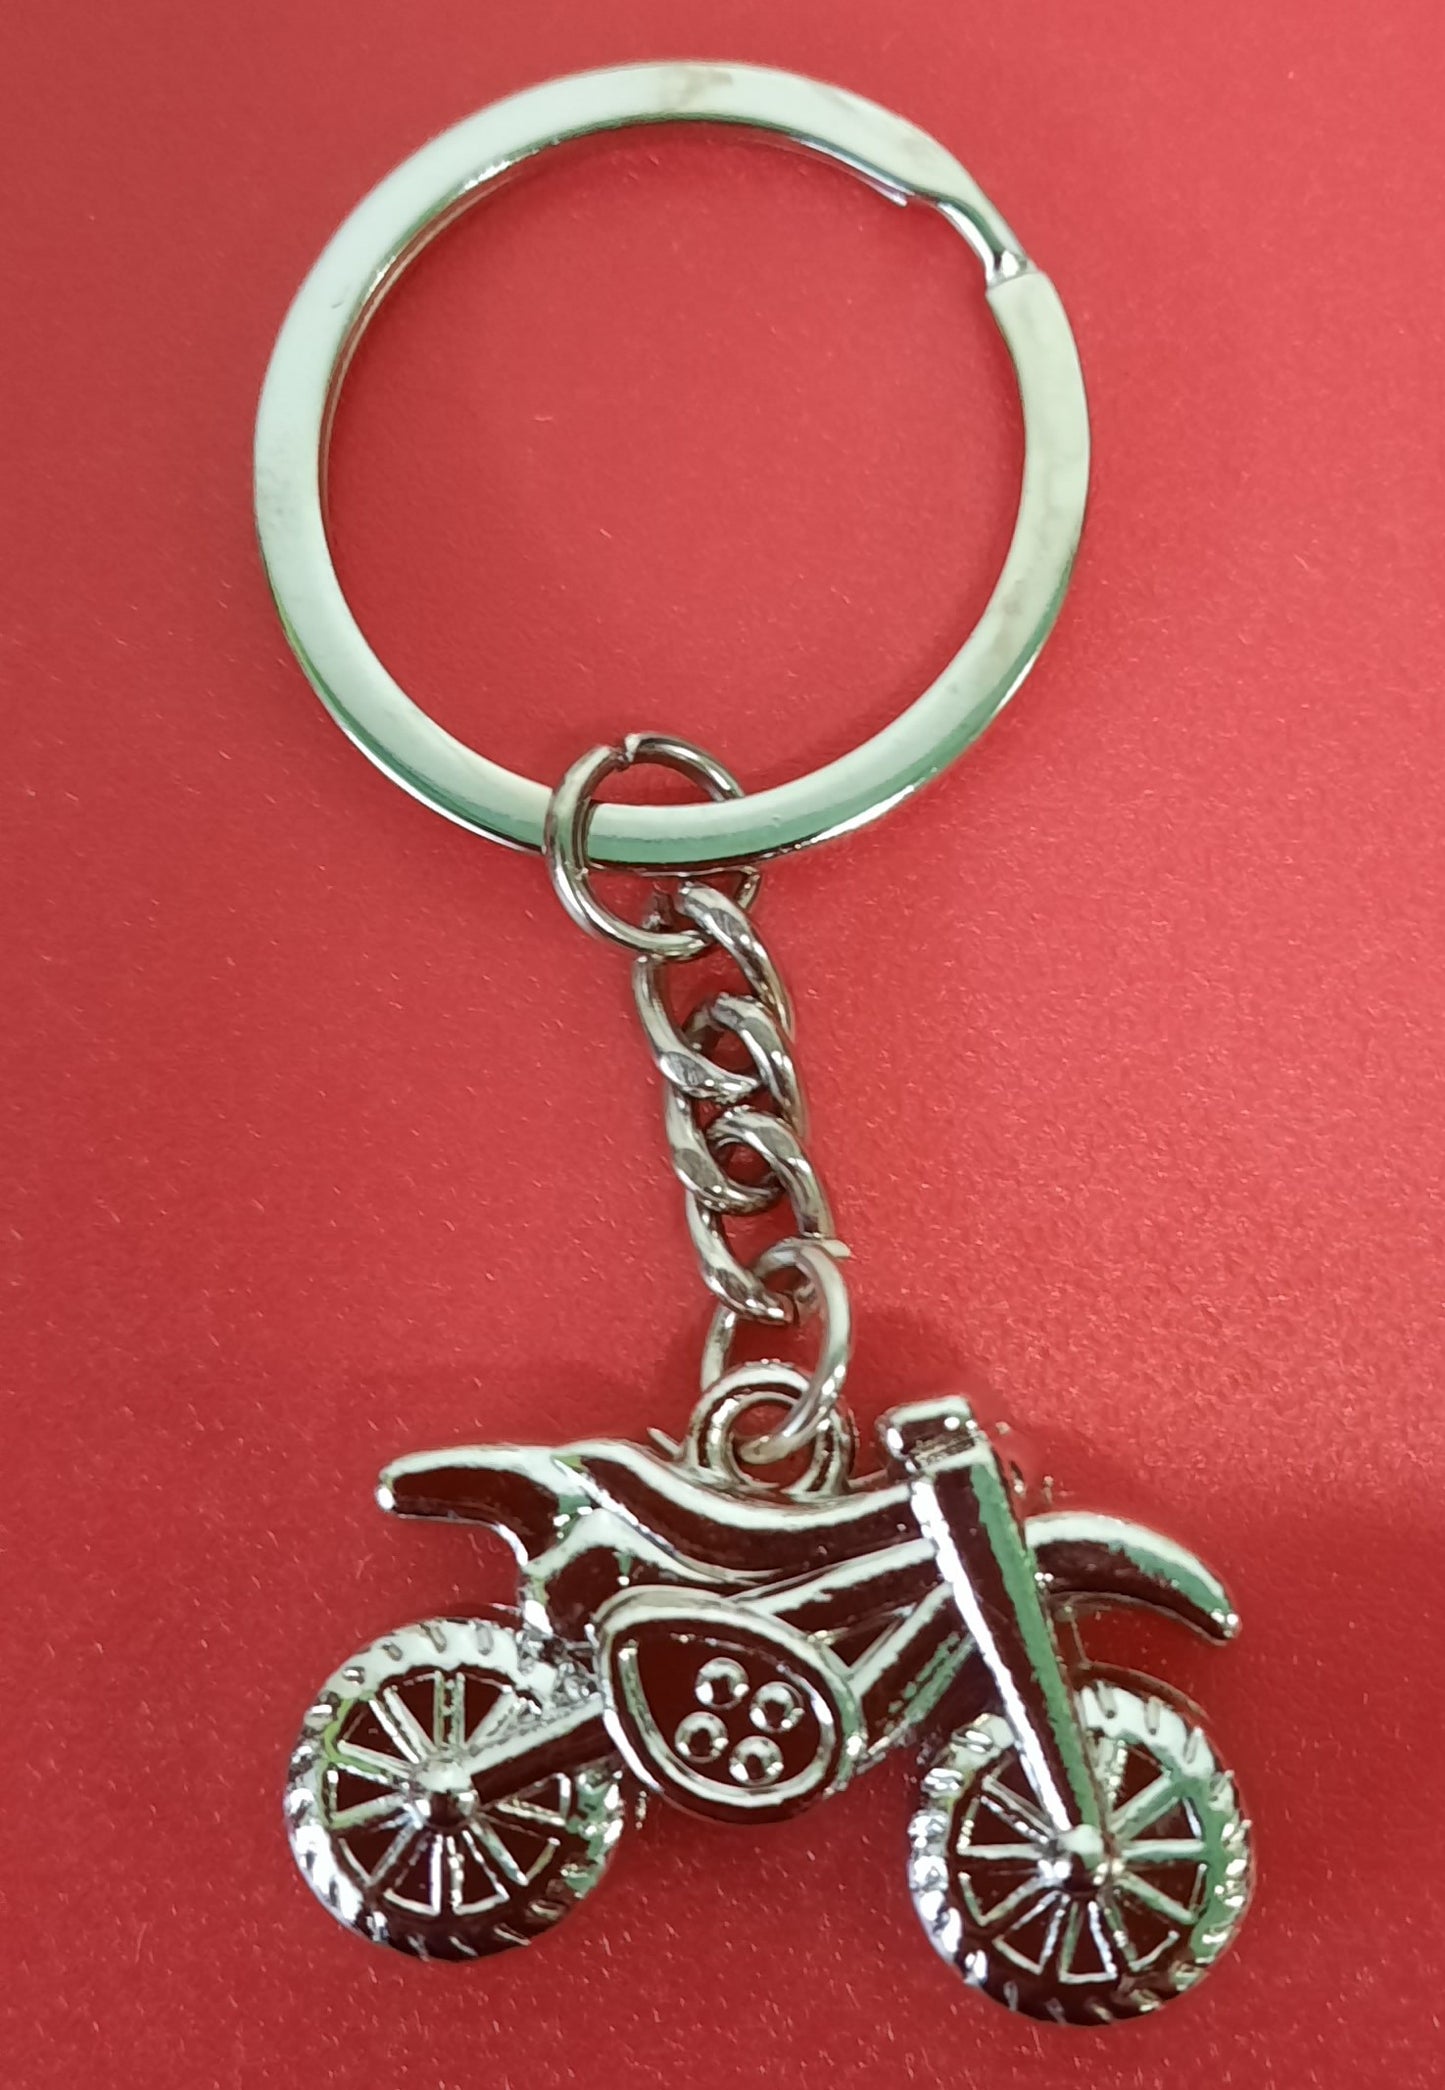 Motorbike Key Ring